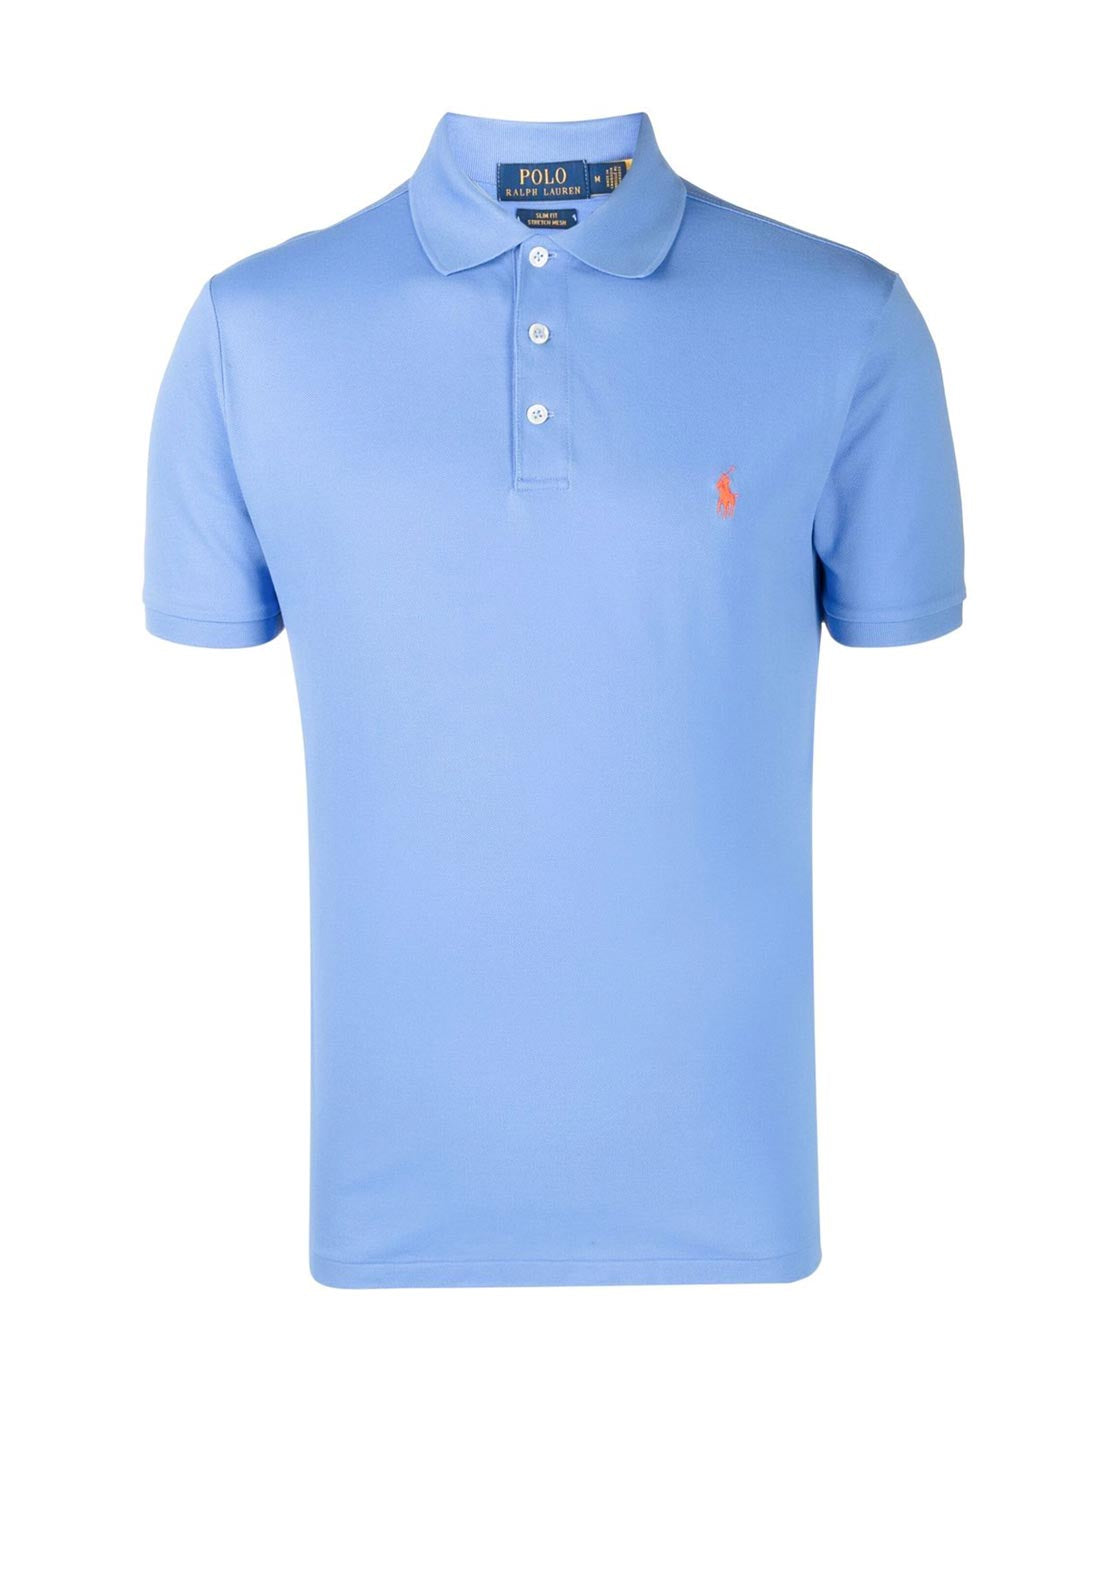 Ralph Lauren Classic Polo Shirt, Light Blue - McElhinneys